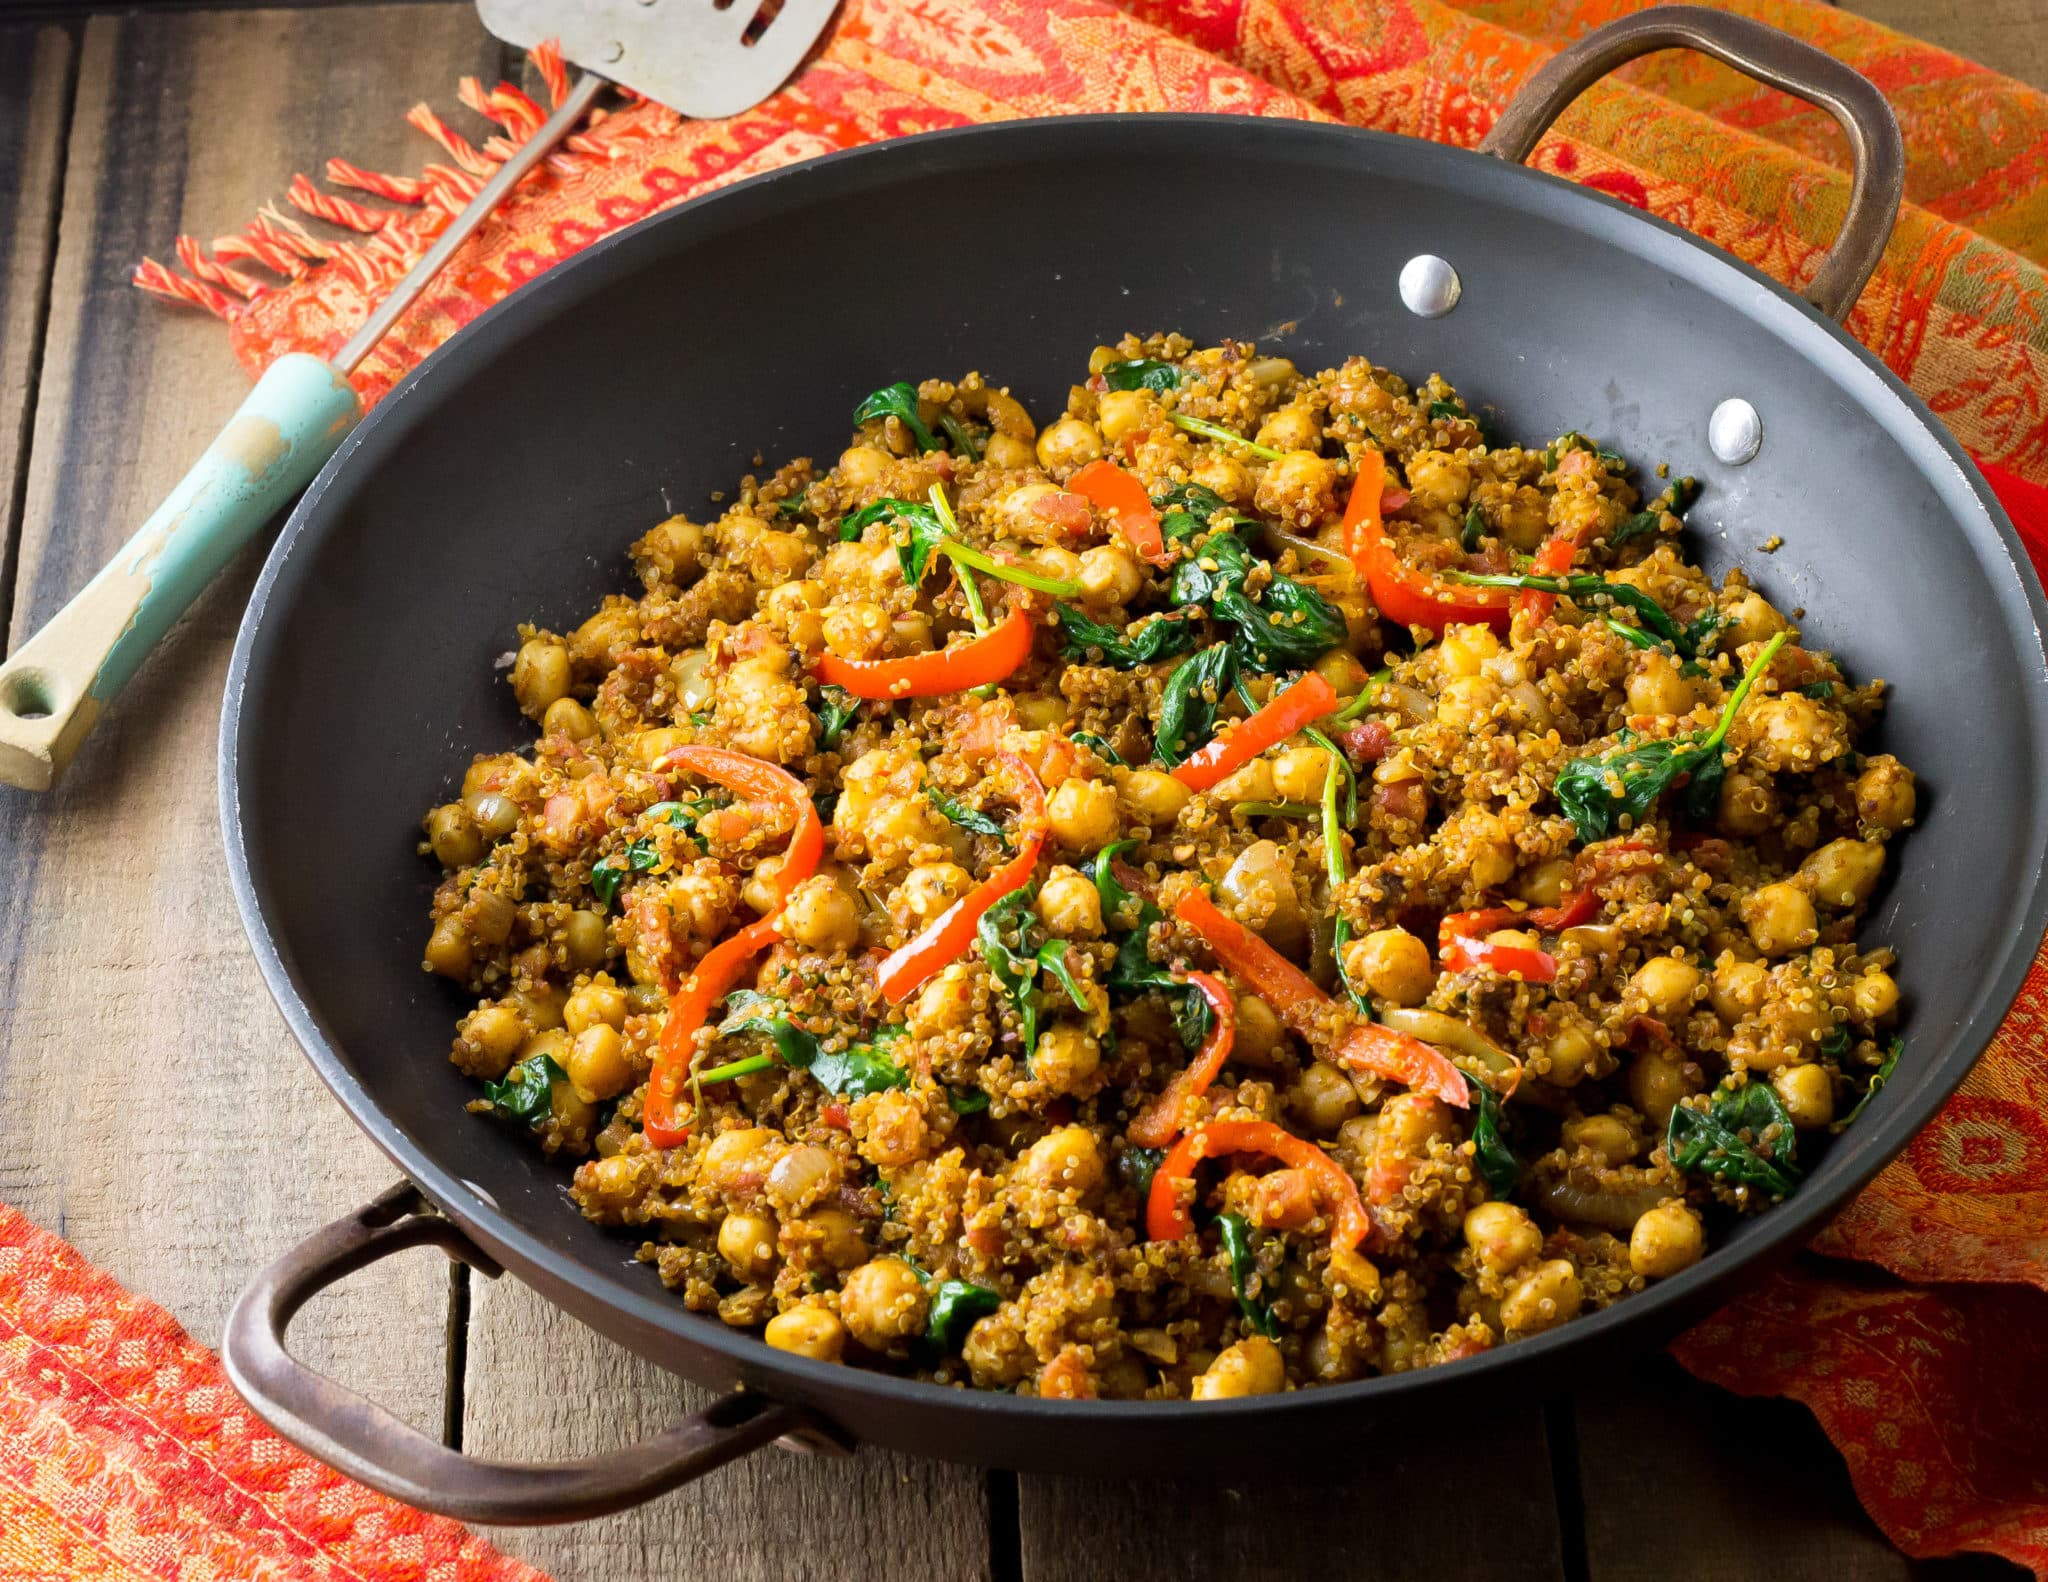 Vegan Recipe With Quinoa
 Indian Quinoa and Chickpea Stir Fry